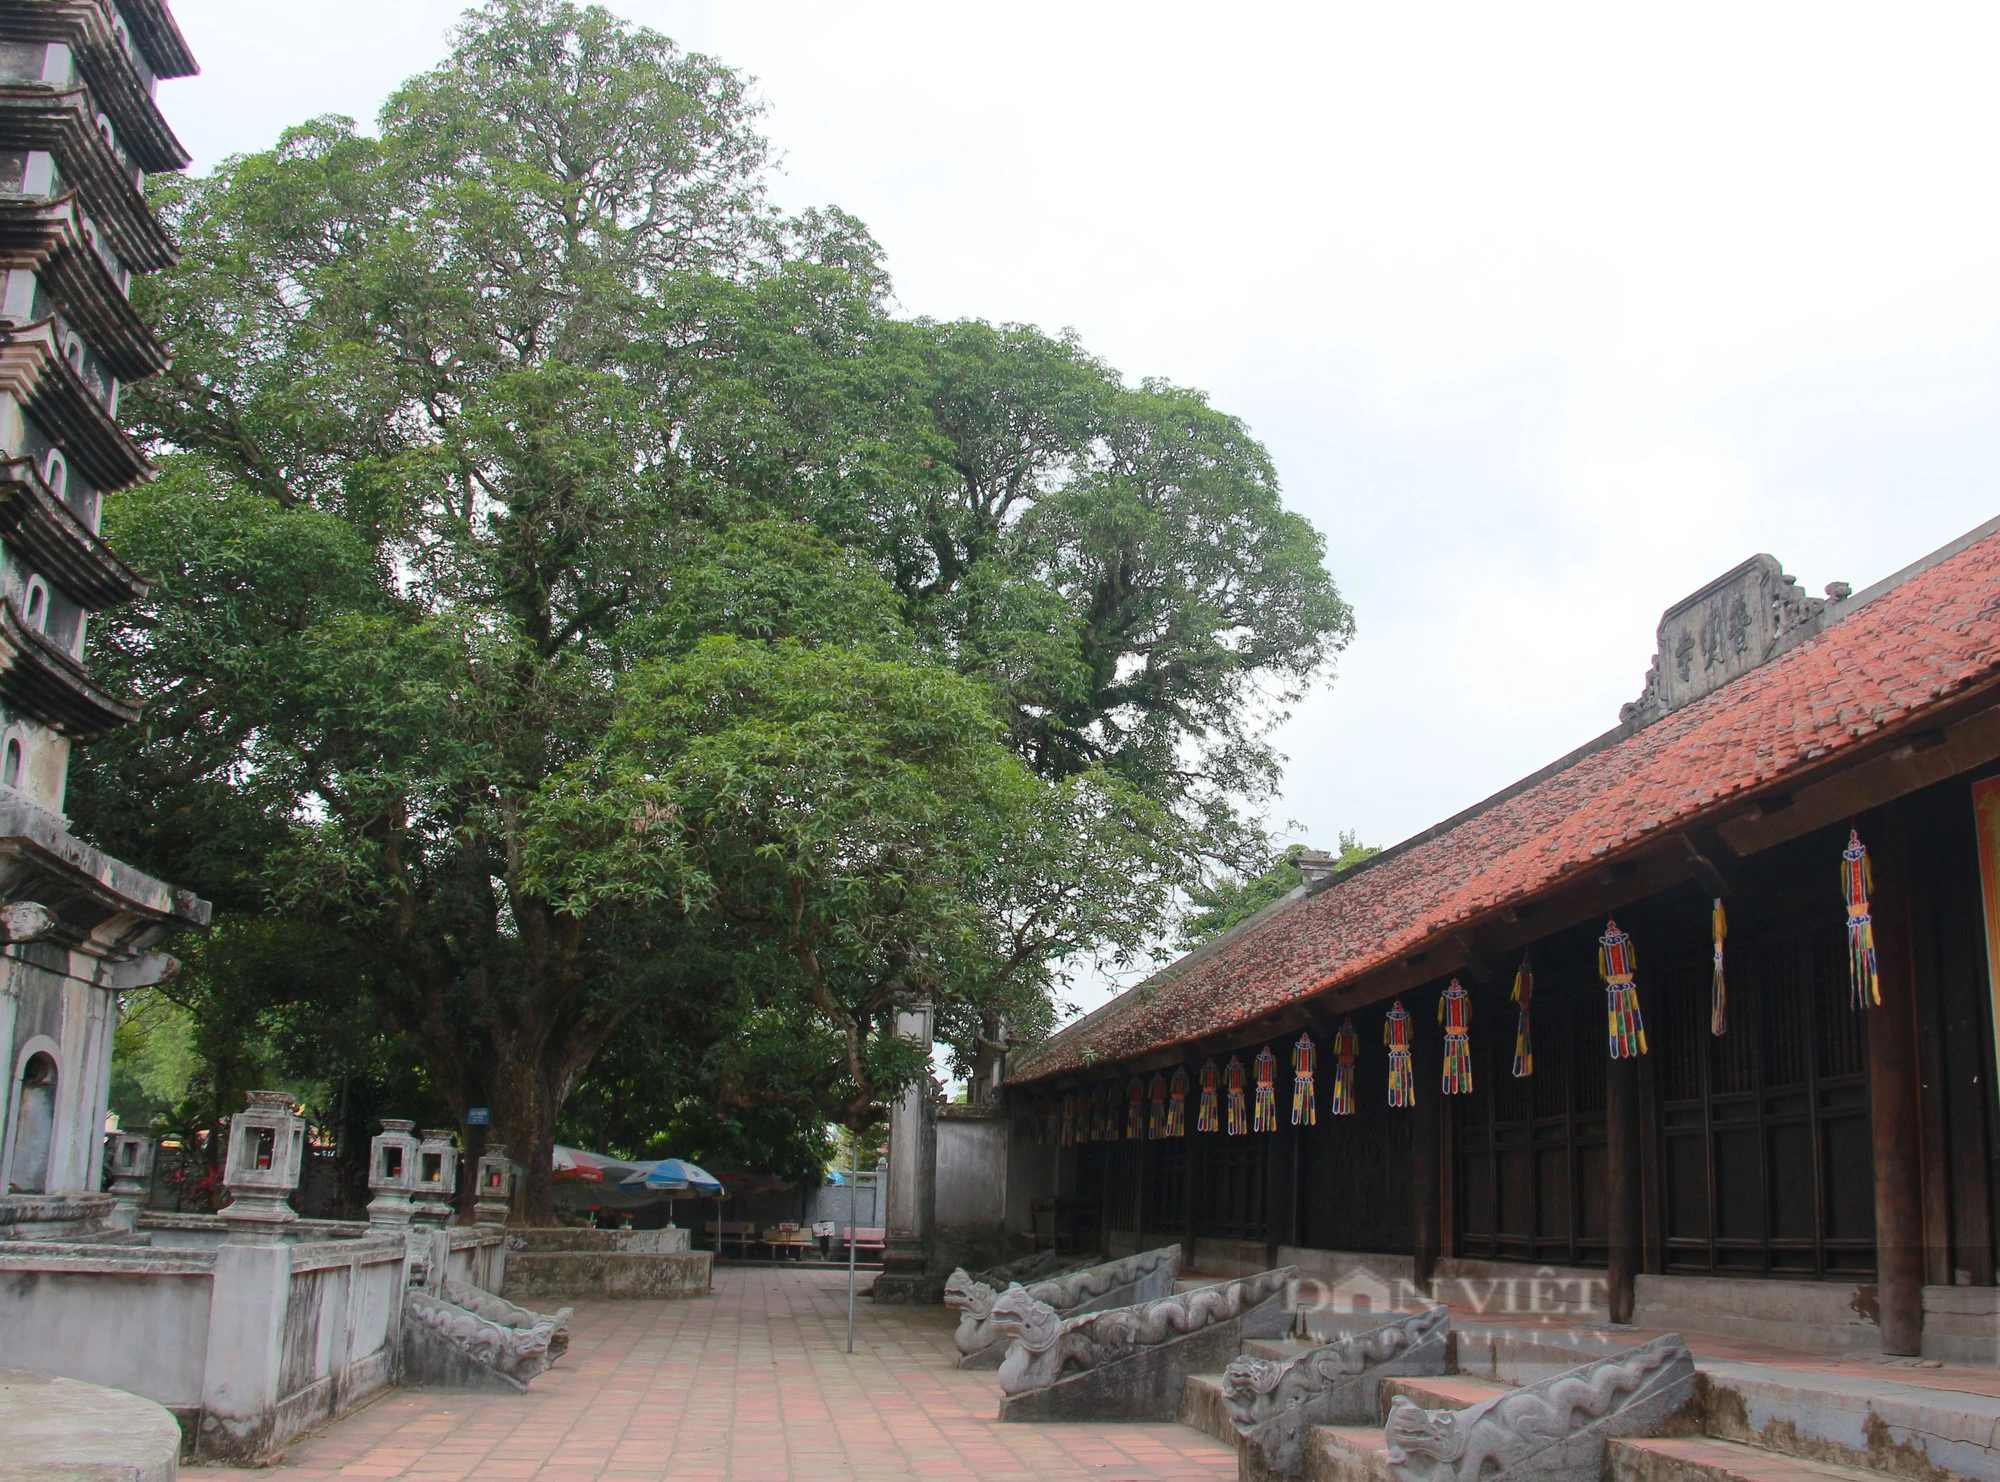 Bốn cây cổ thụ hàng trăm năm tuổi ở chùa Phổ Minh của Nam Định vẫn xanh tươi bốn mùa- Ảnh 4.